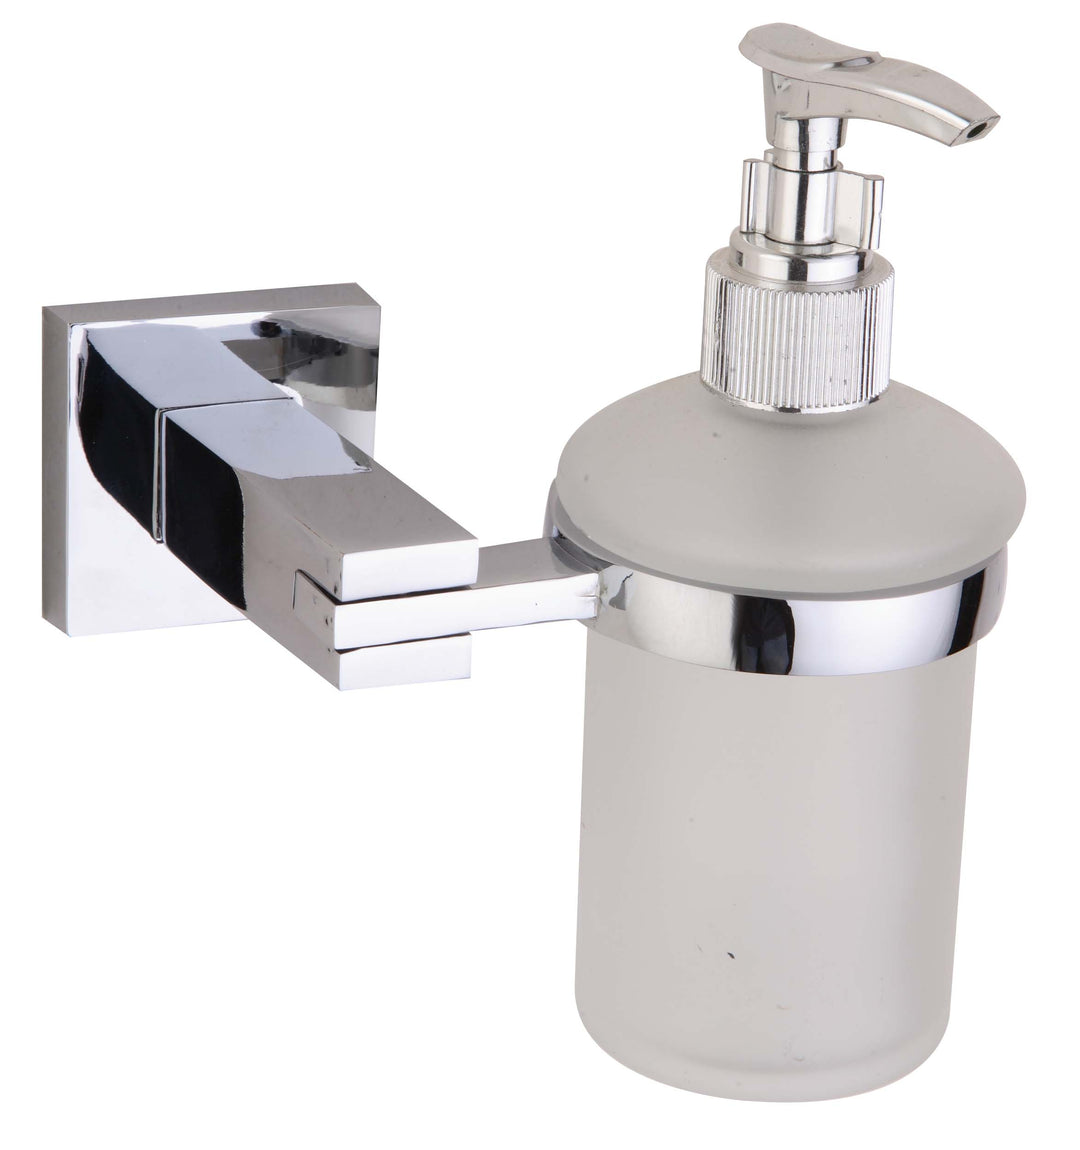 Soap dispenser CATRIN in chrome look